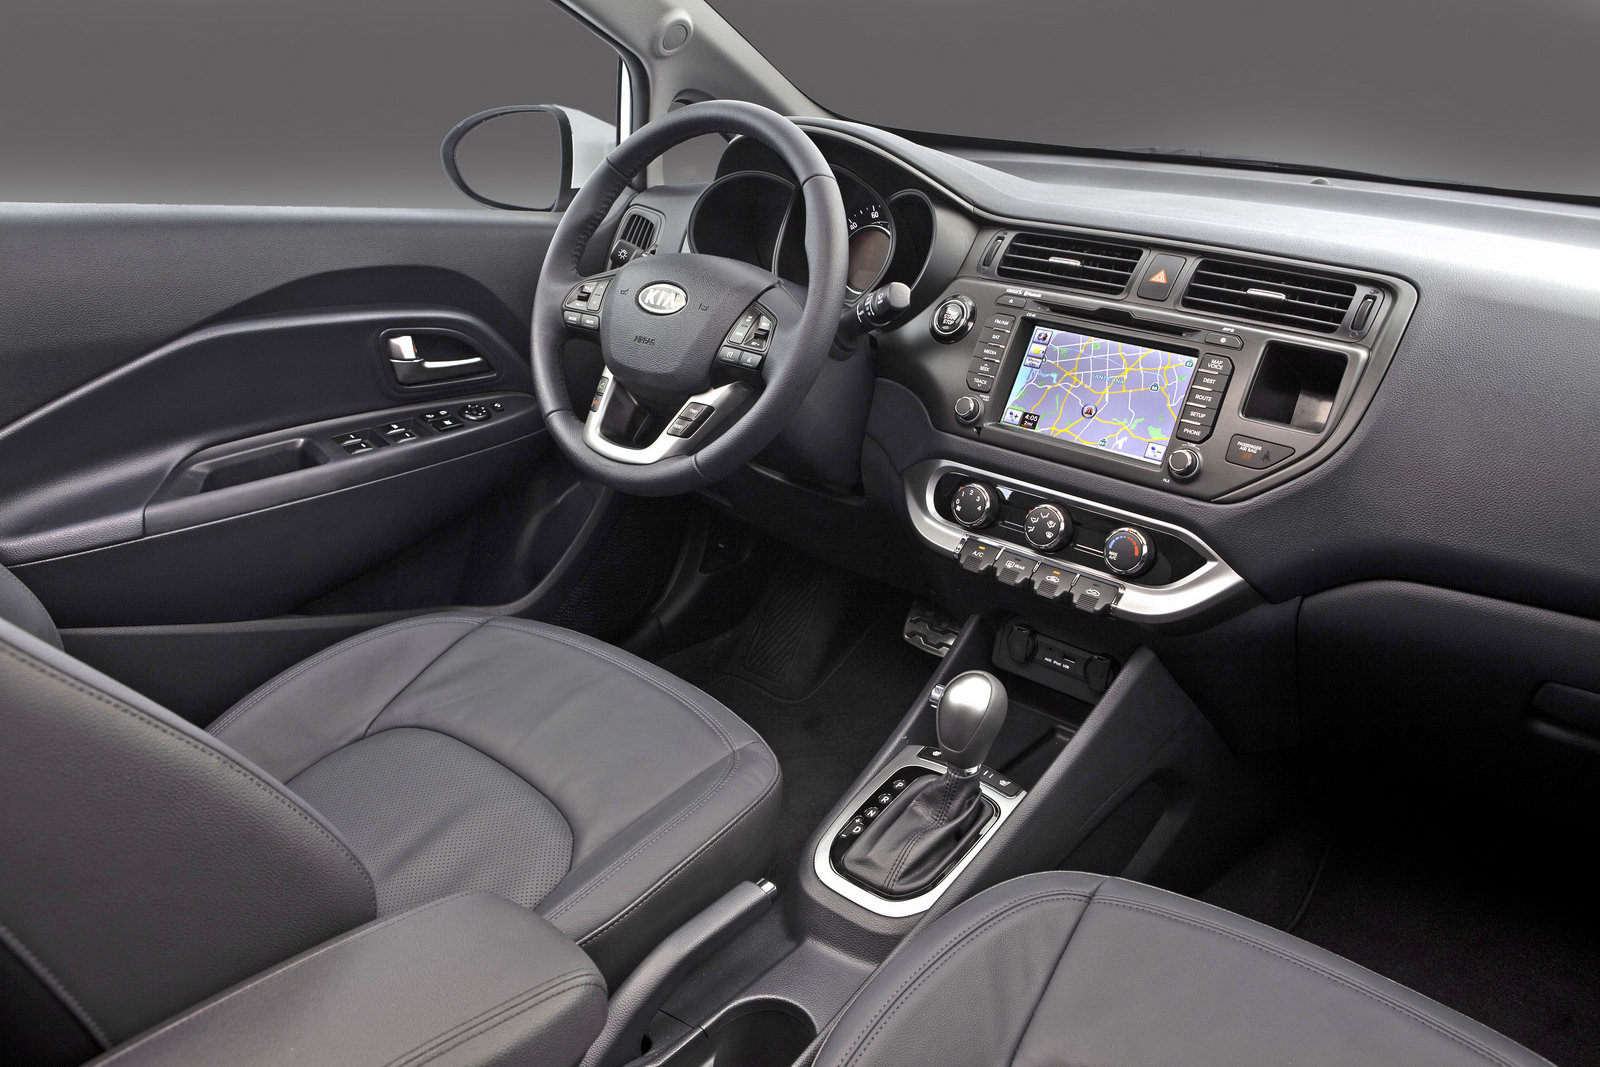 In versiunile superioare de echipare, KIA Rio Sedan are un interior luxos si high-tech